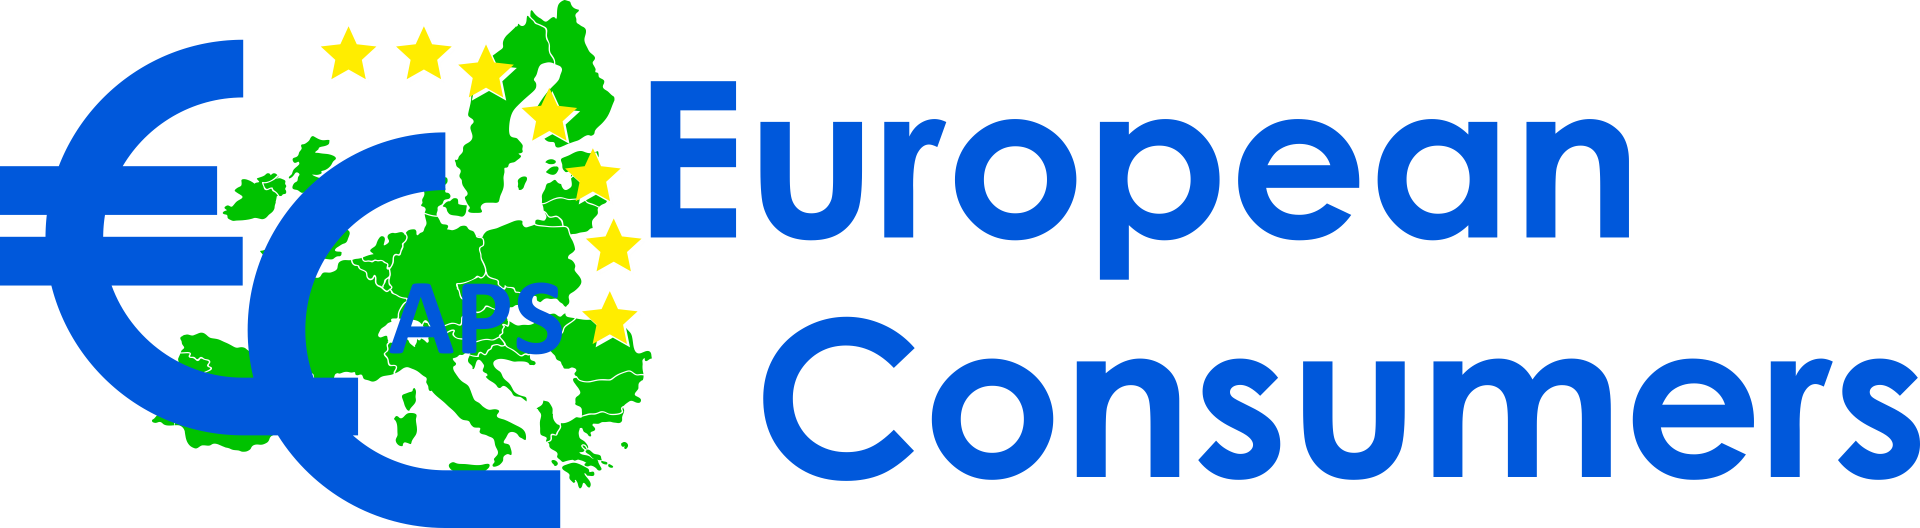 European Consumers